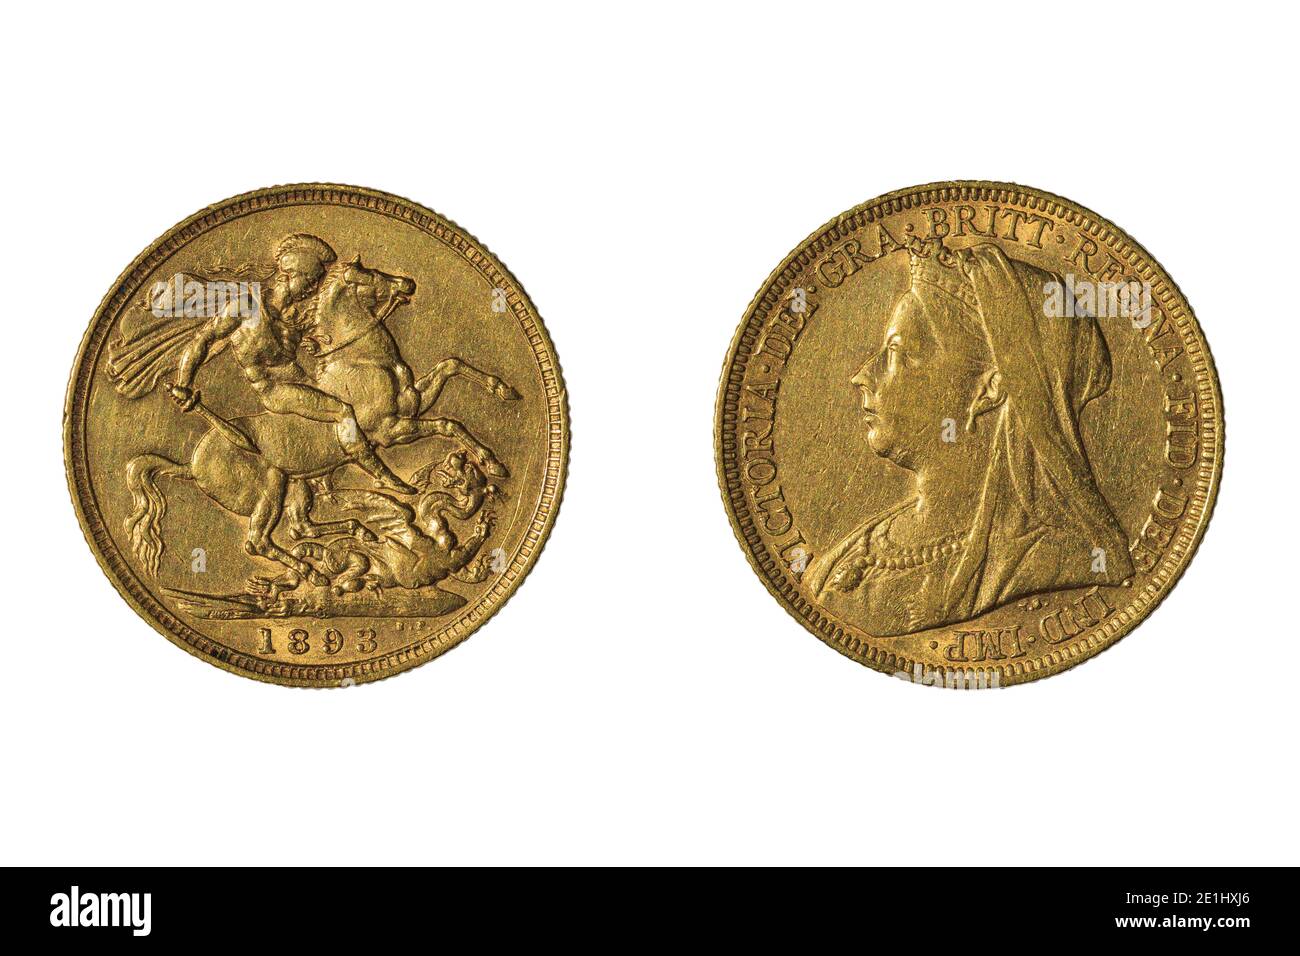 Una moneta semisovereana d'oro della Gran Bretagna del 1893, con la Regina Vittoria e San Giorgio che uccide il drago Foto Stock